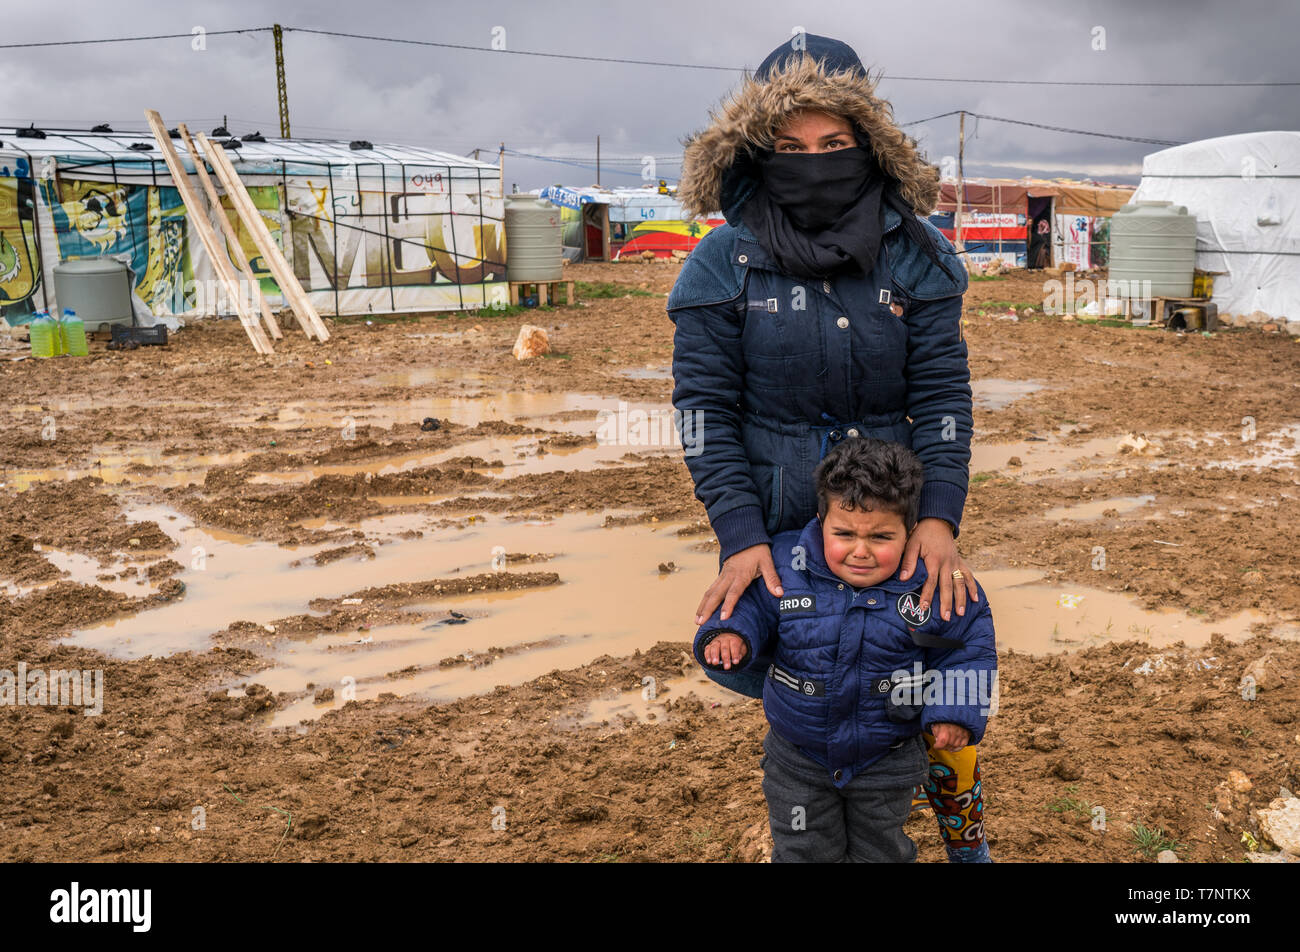 Vallée de la Bekaa, au Liban. Réfugiés syriens au camp de réfugiés dans un cadre informel, boueux et froid humide i Février 2019 Banque D'Images